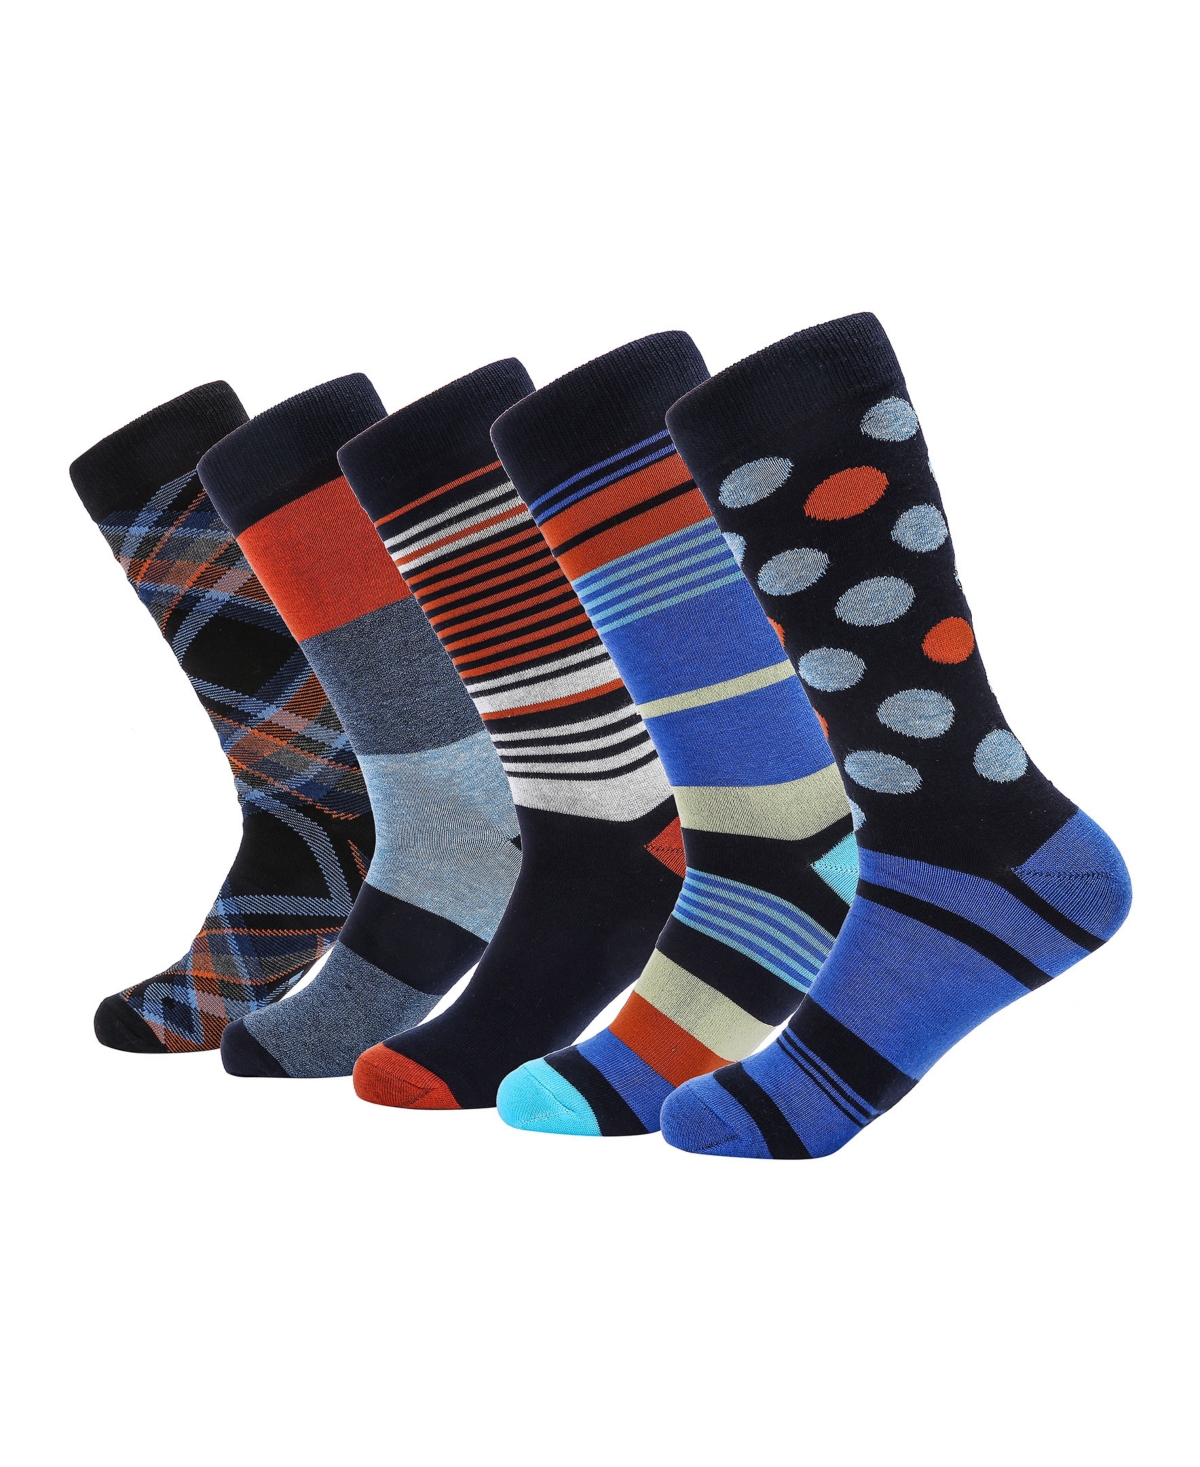 Men's Groovy Designer Dress Socks Pack of 5 - Mauve